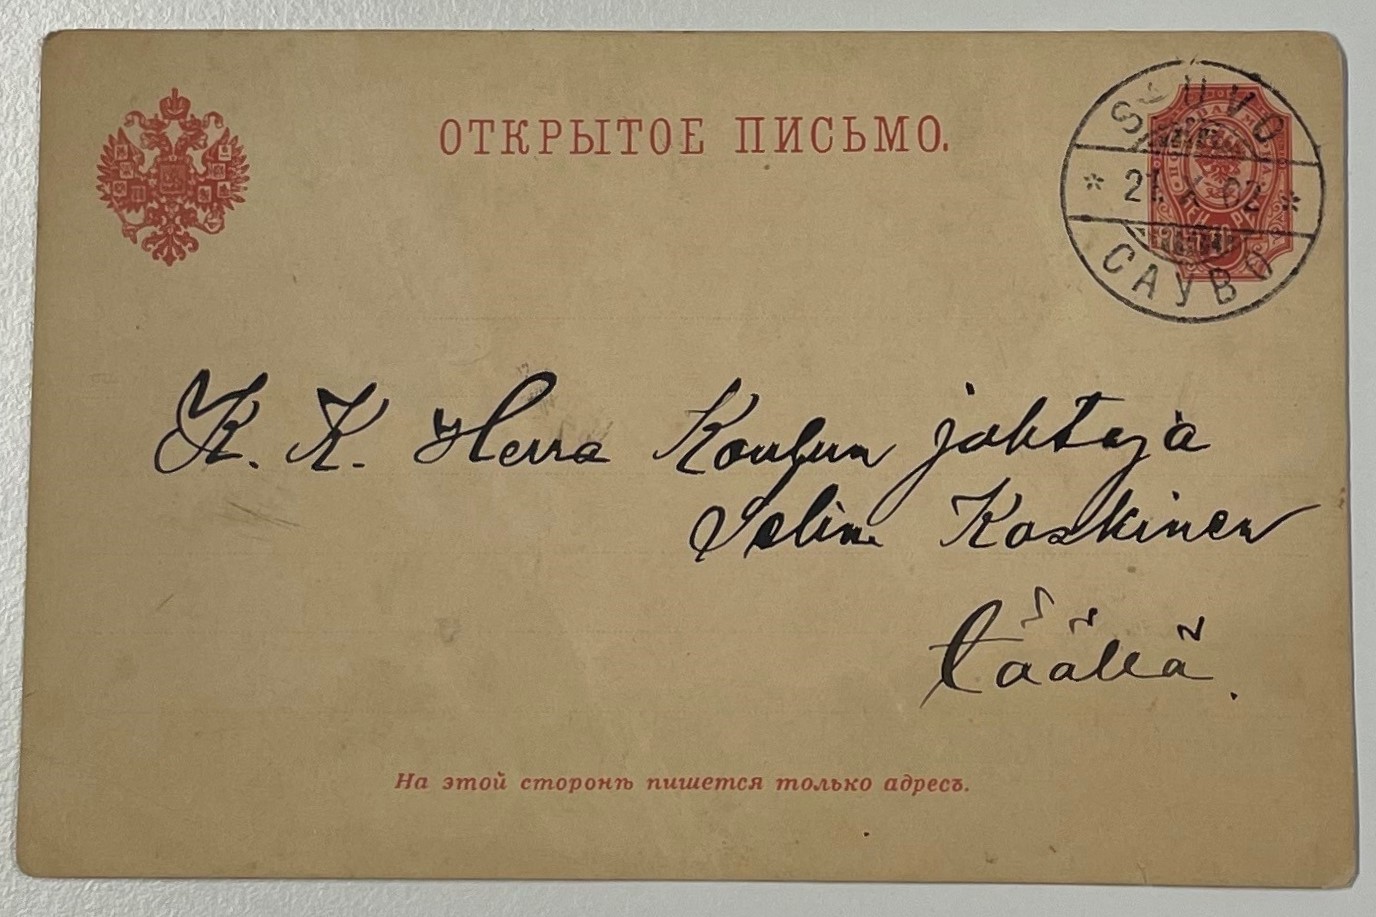 Venäjänkieliseen kirjekuoreen merkitty osoitteeksi K. K. Herra Koulun johtaja Selina Koskinen Täällä.